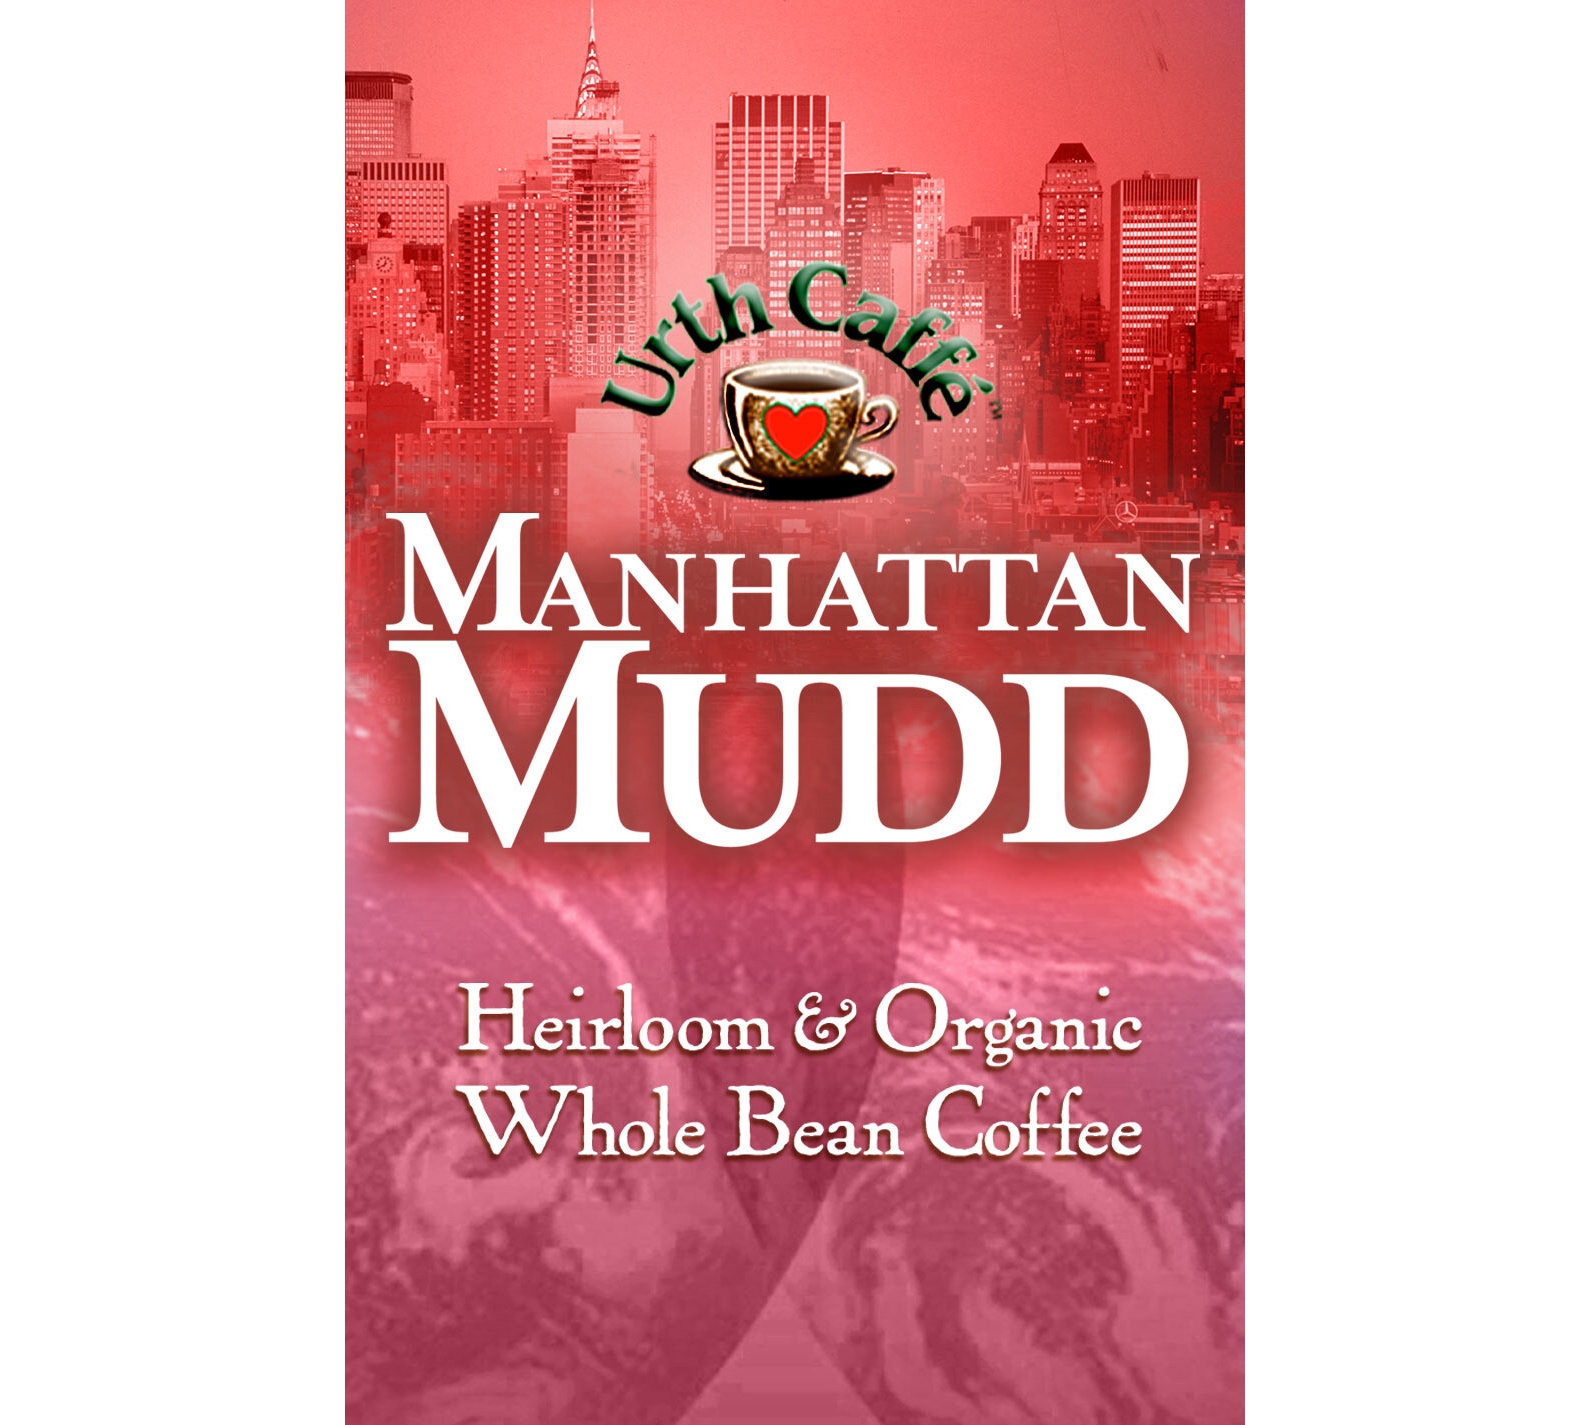 Order MANHATTAN MUDD™ food online from Urth Caffe store, Hawthorne on bringmethat.com